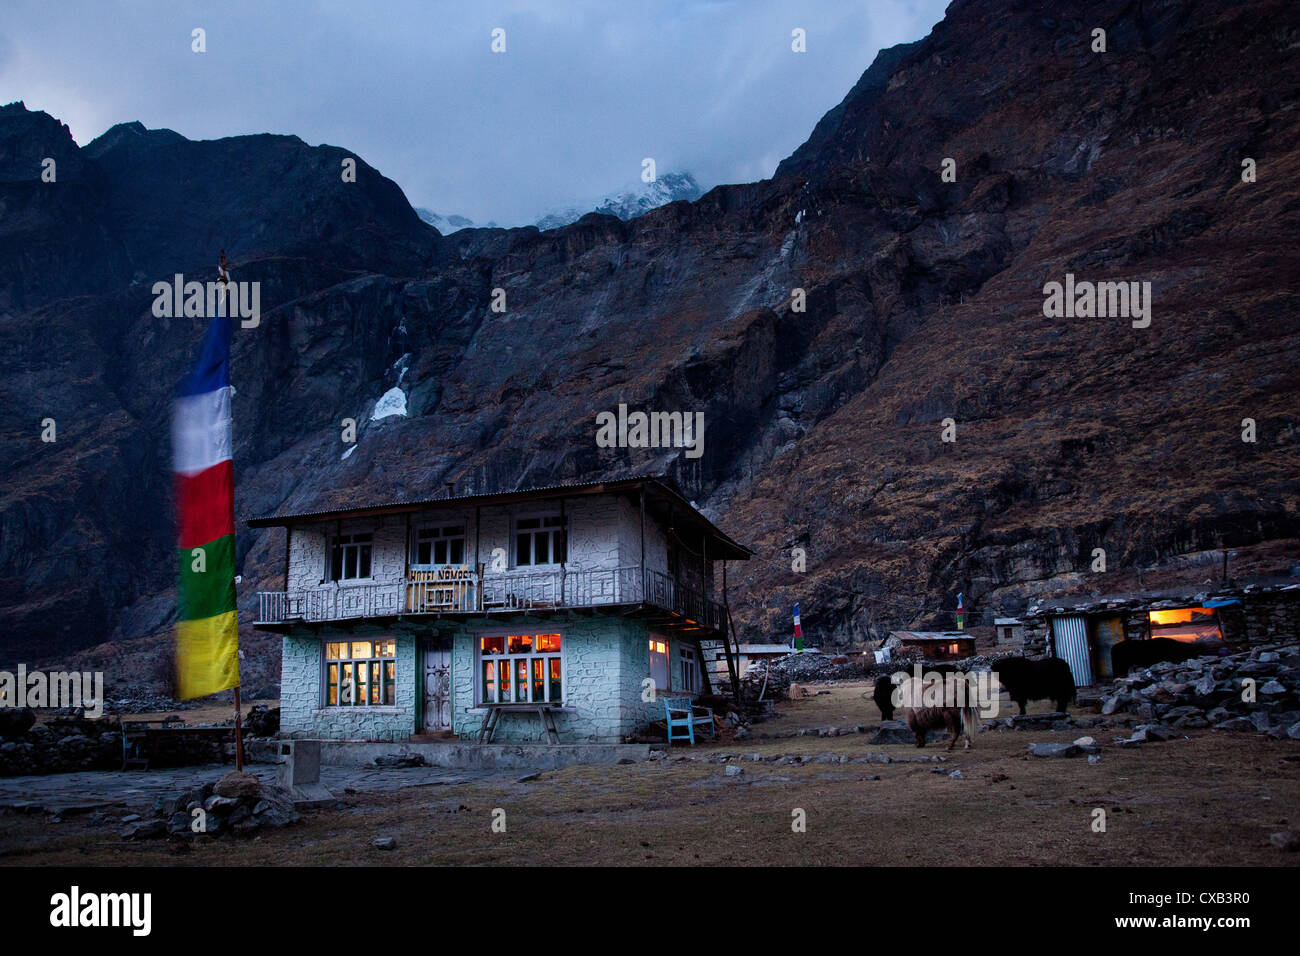 Tetería iluminados durante la noche, en lo alto de las montañas, Langtang village, Nepal Foto de stock